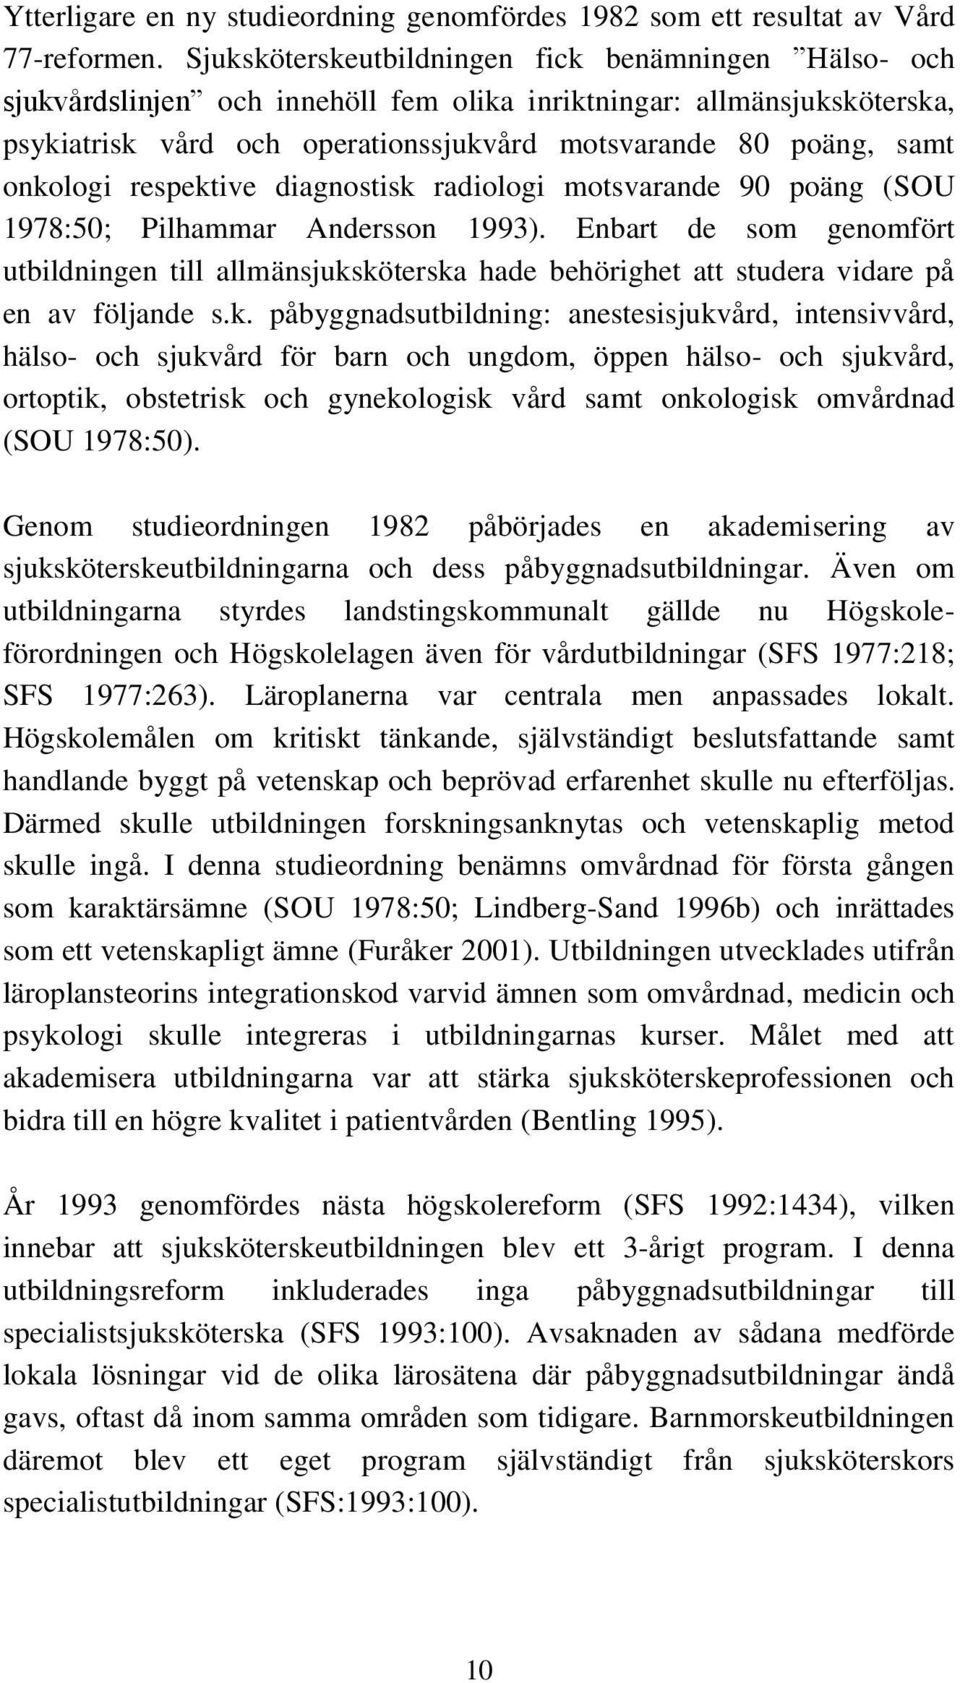 onkologi respektive diagnostisk radiologi motsvarande 90 poäng (SOU 1978:50; Pilhammar Andersson 1993).